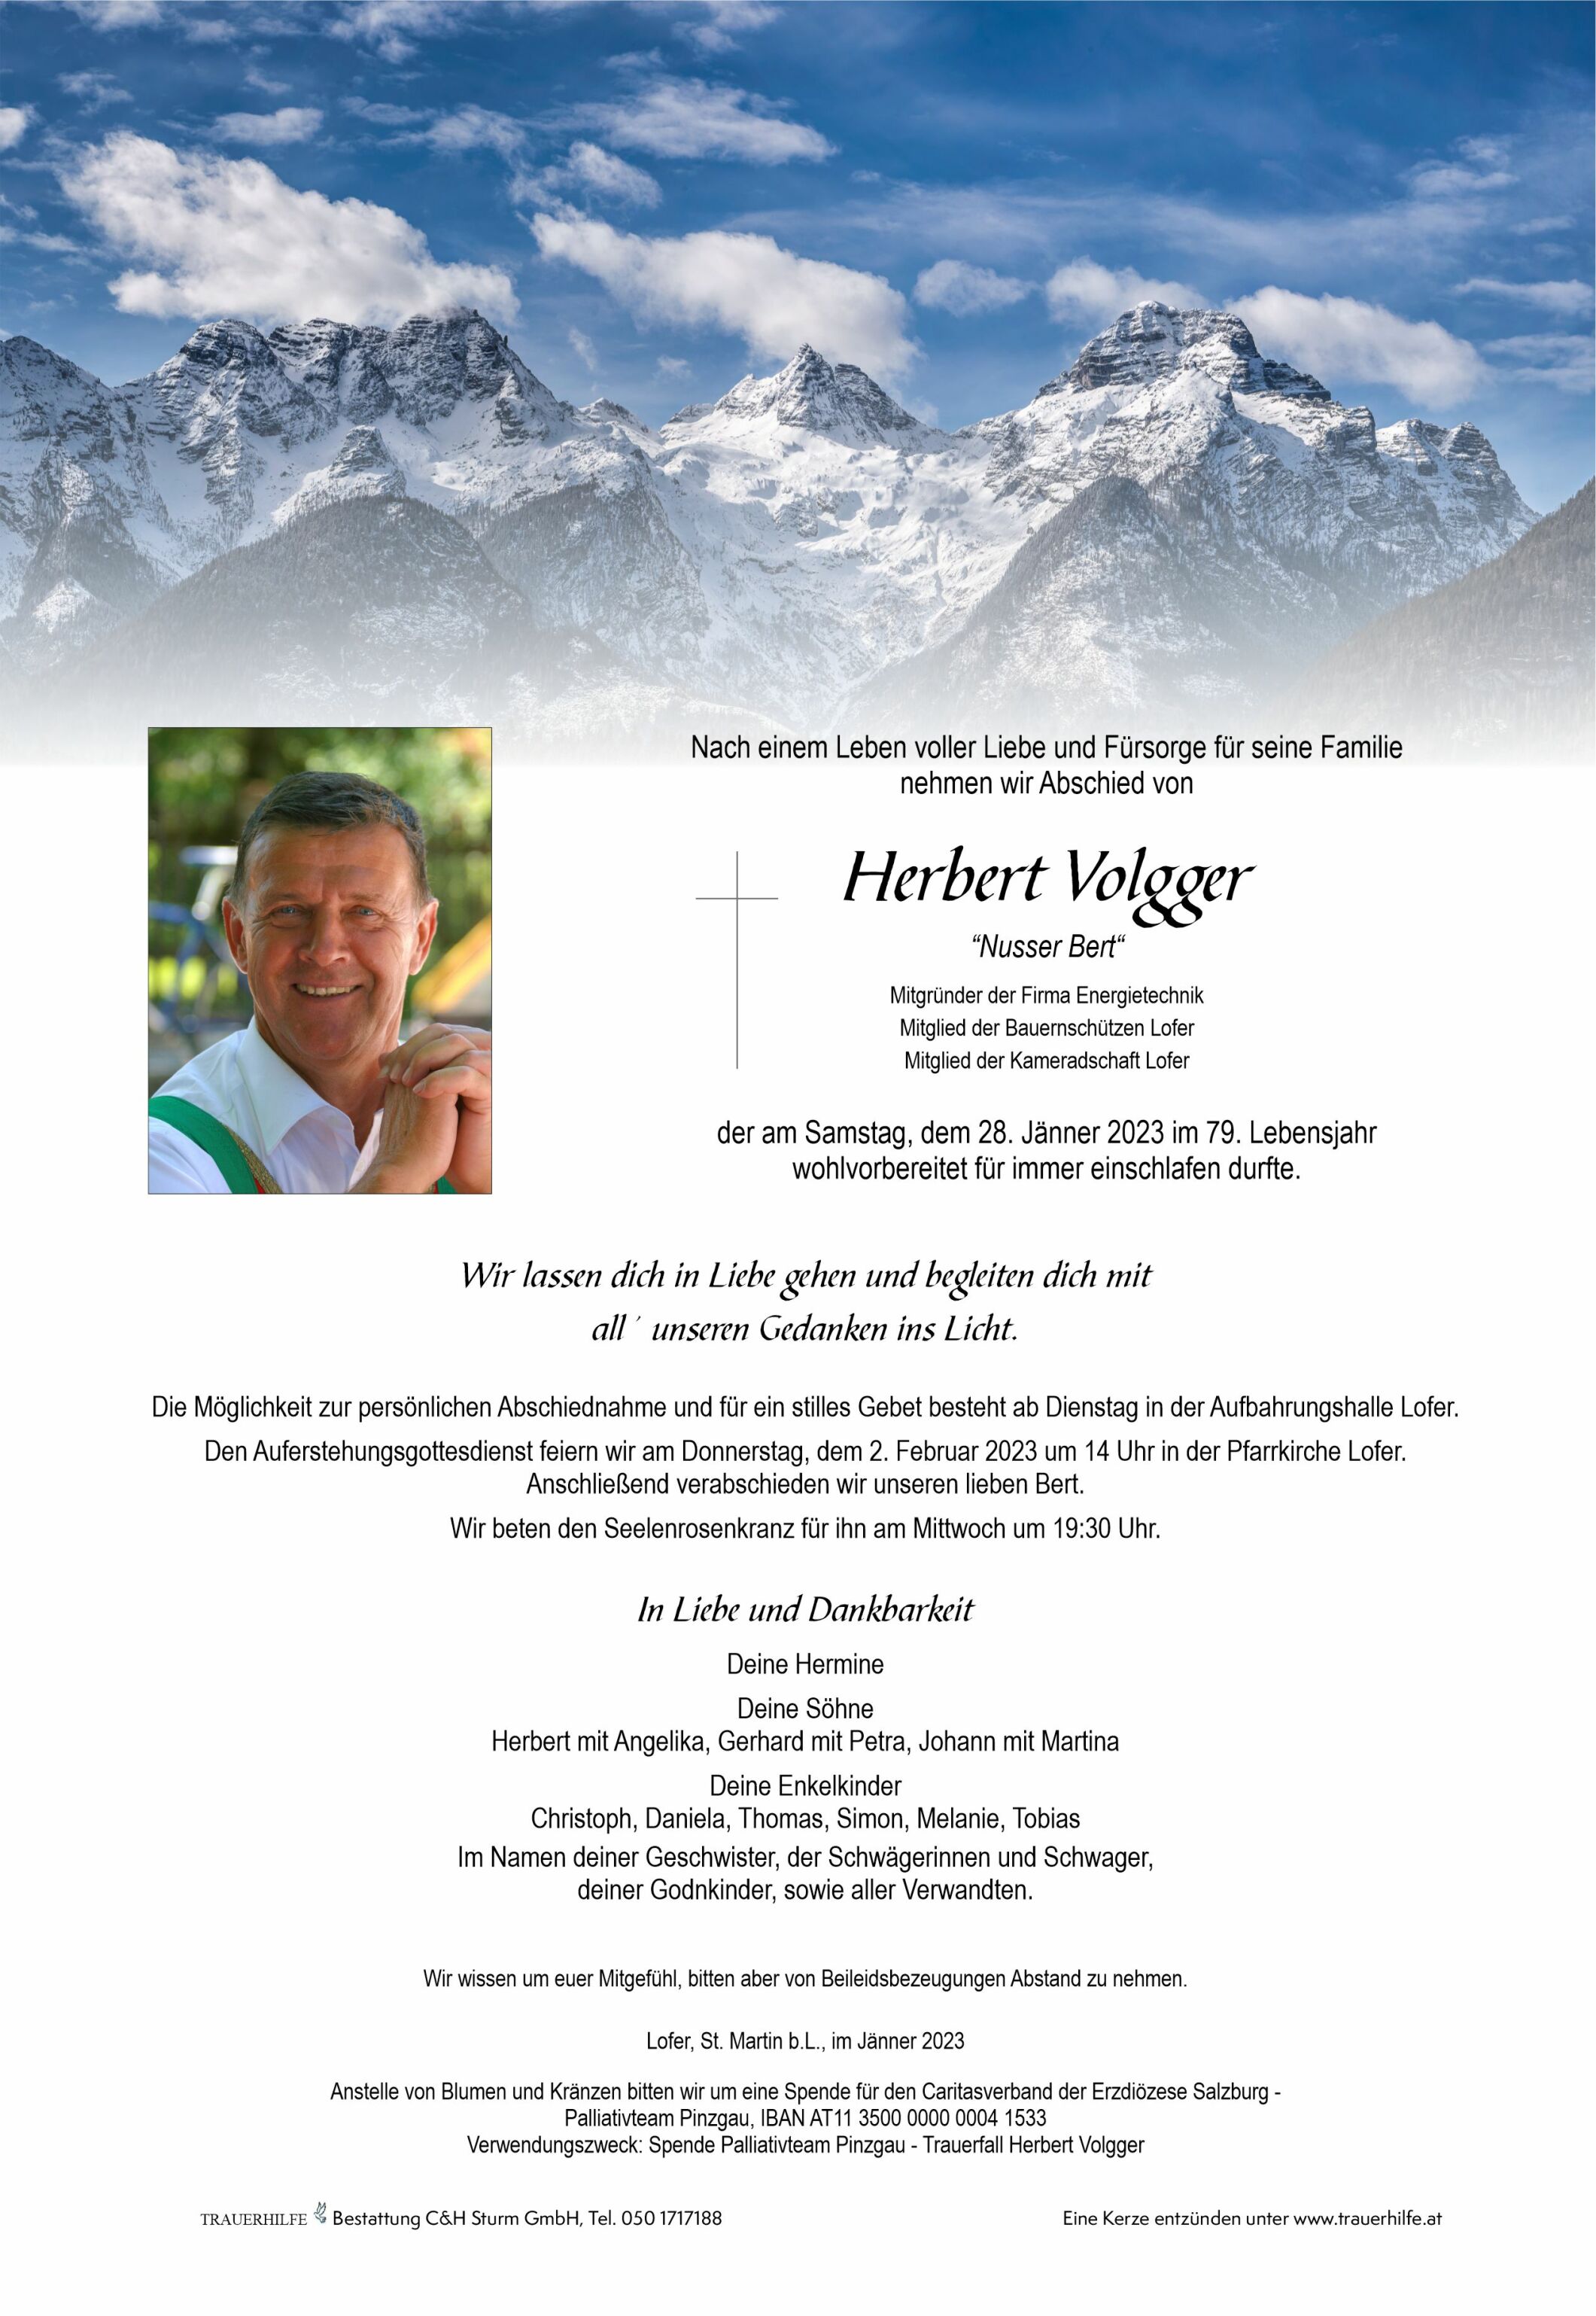 Herbert Volgger